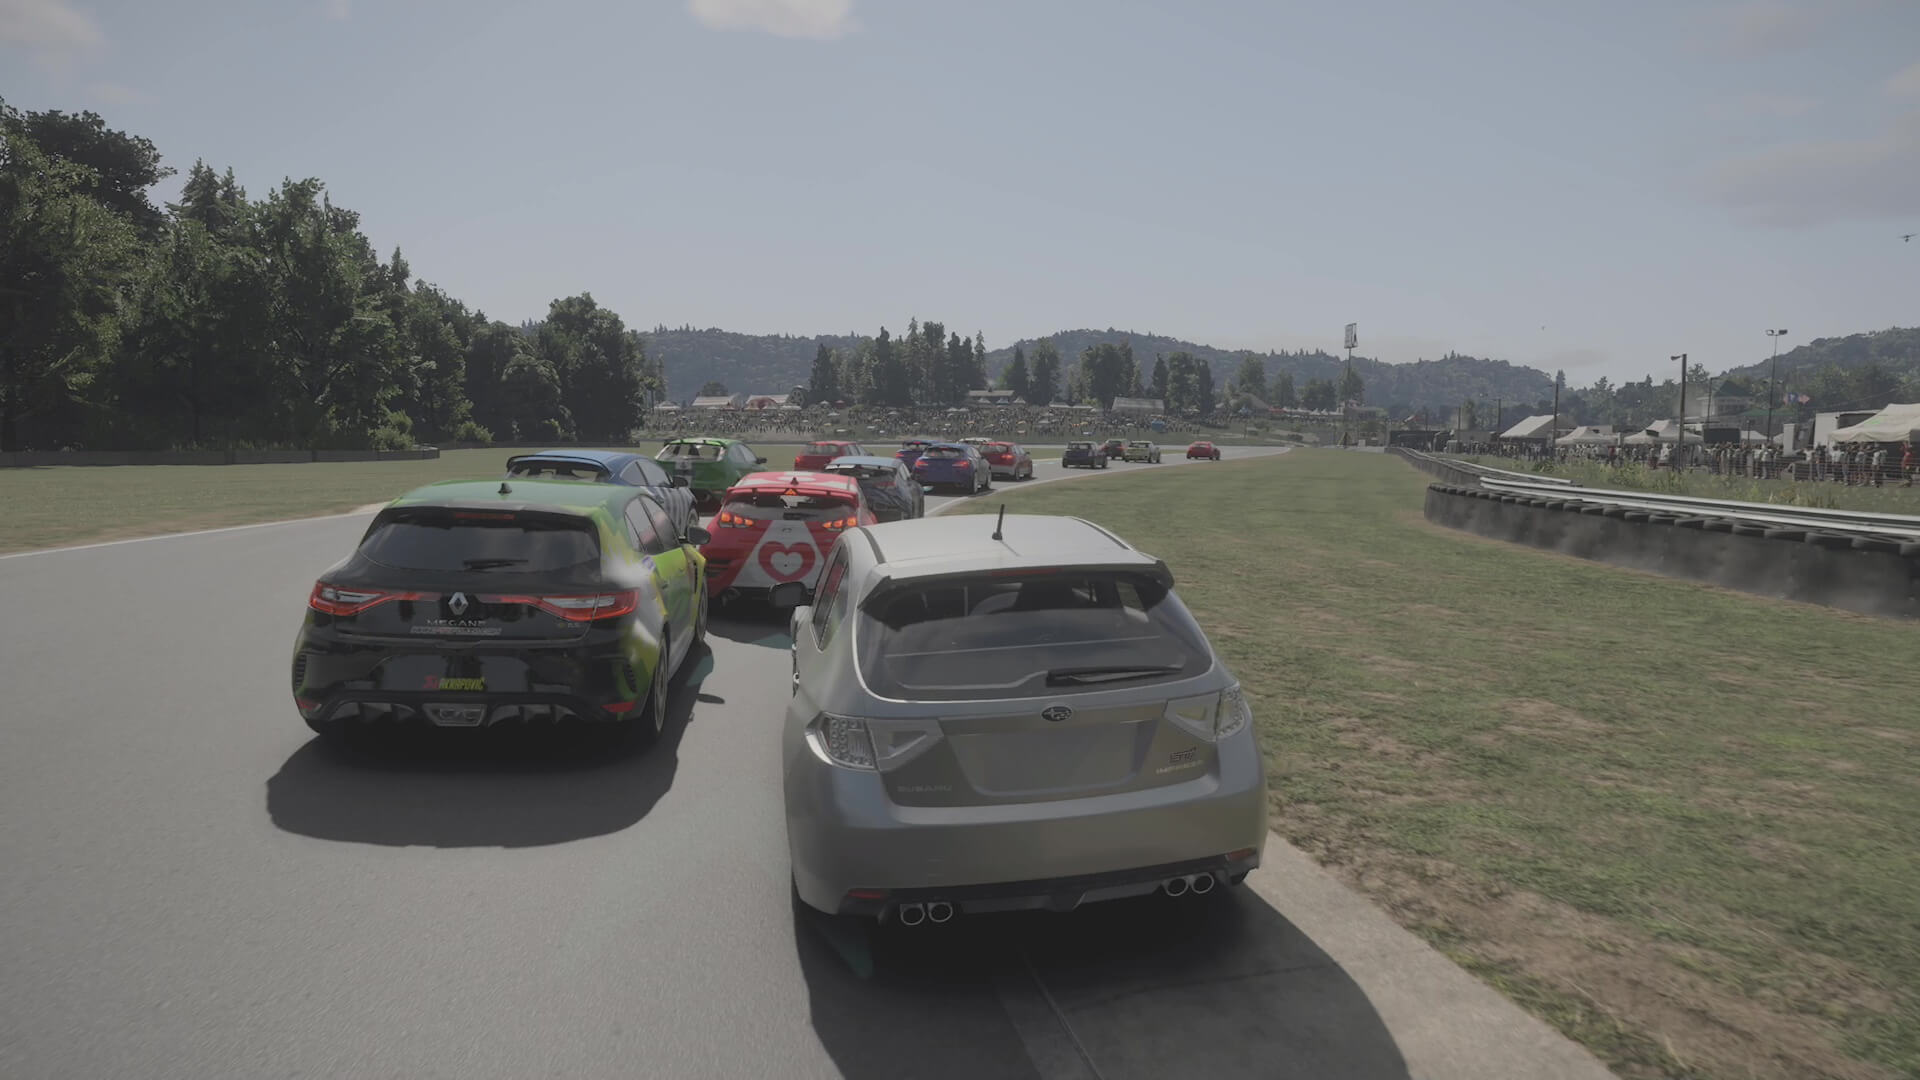 Screenshot di Forza Motorsport, mostra una serie di auto che rallentano mentre girano una curva, con alberi sullo sfondo.